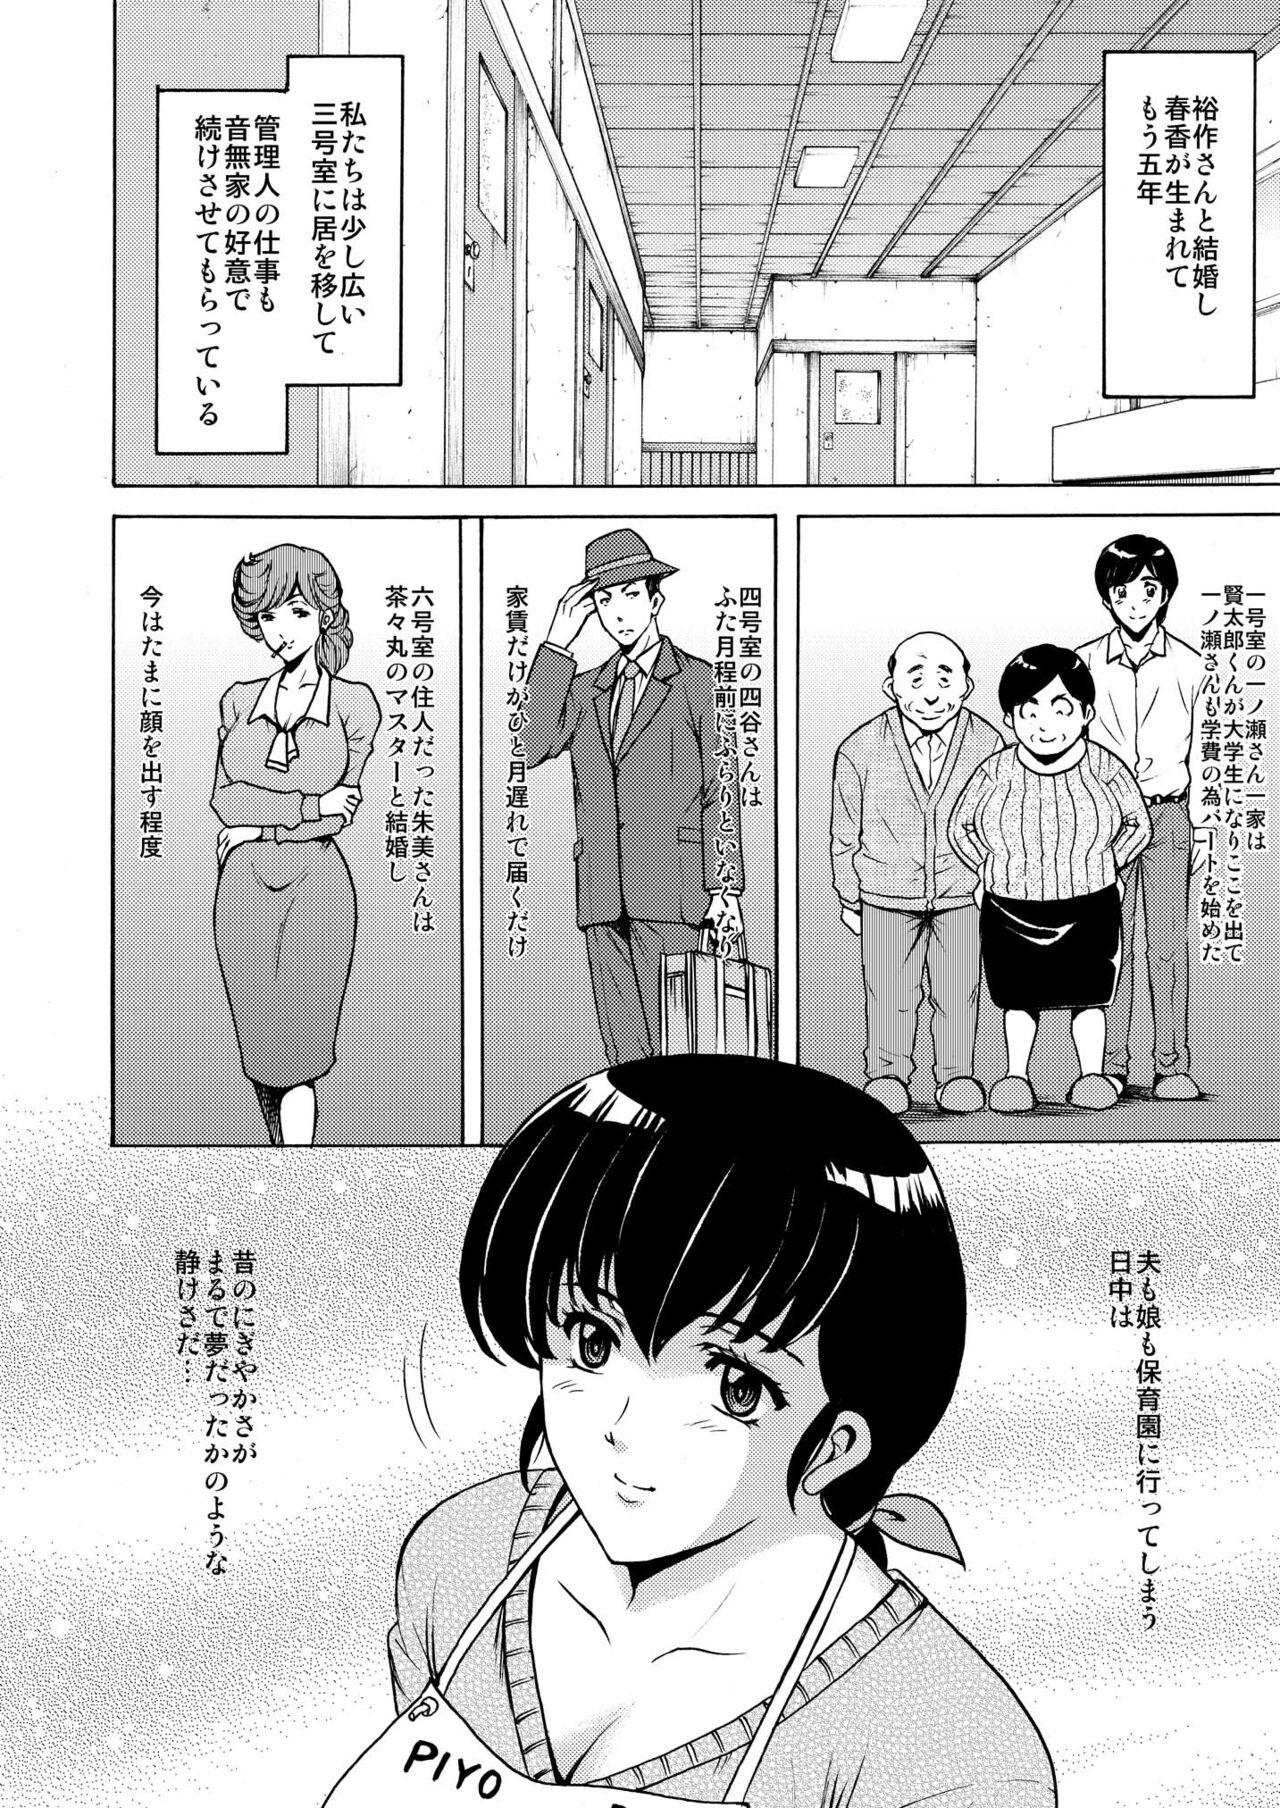 Boquete Hoshino Ryuichi Juicy - Page 4